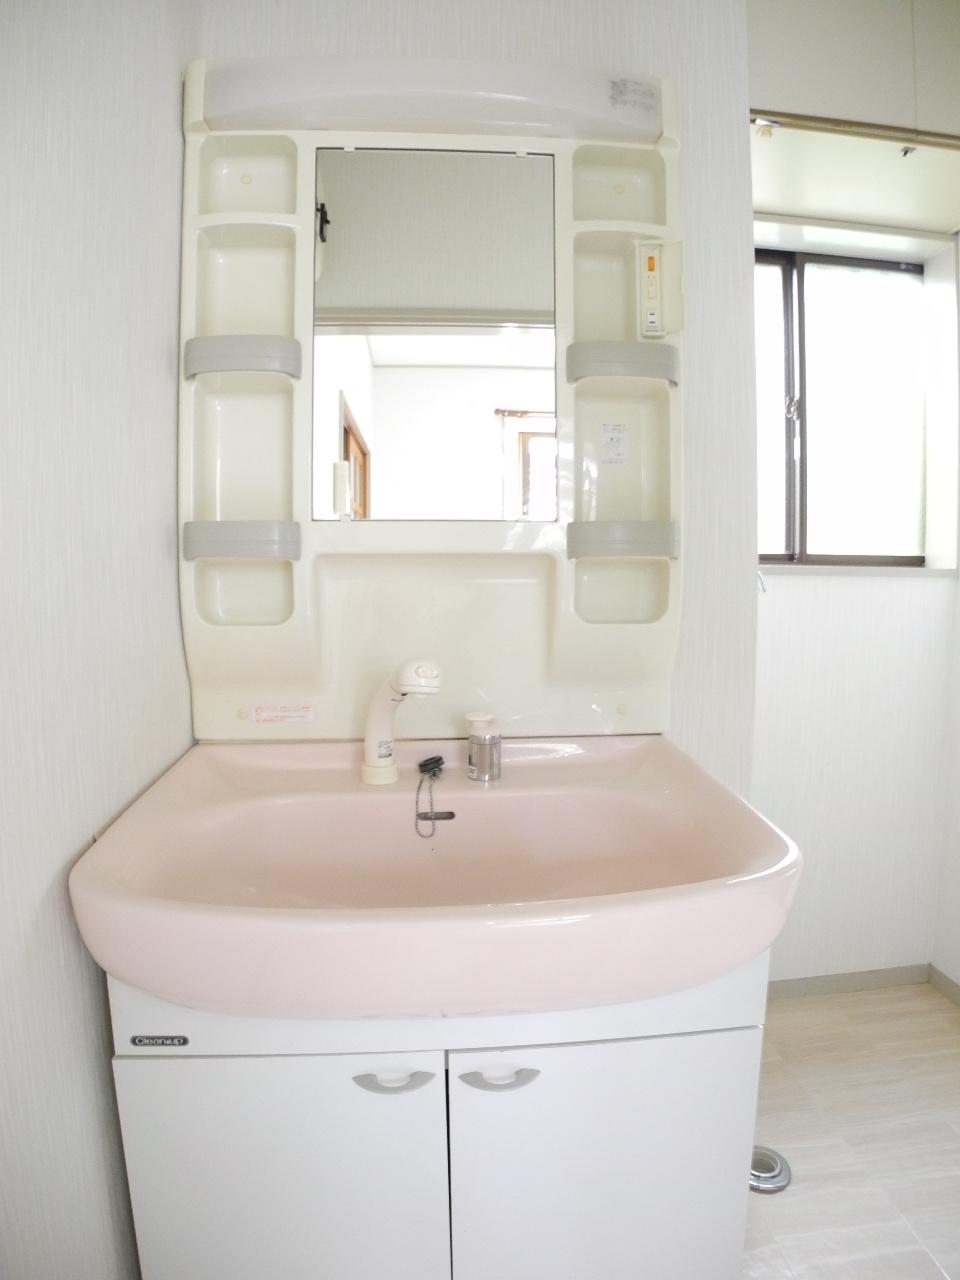 Wash basin, toilet. Bright sanitary (July 2013) Shooting